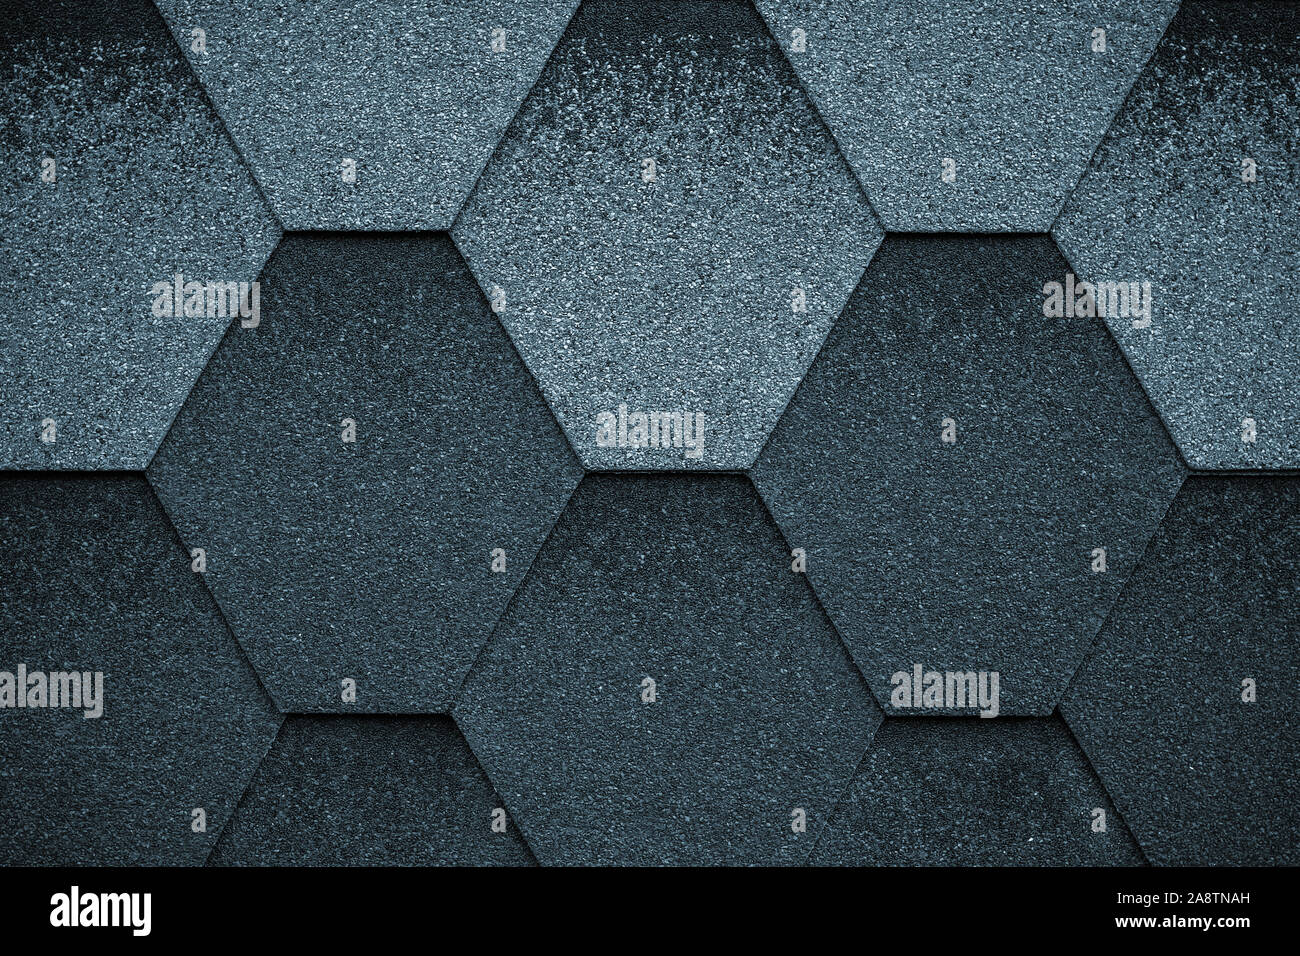 Schwarze und graue Textur Oberfläche der Dachziegel. Abdeckung der Form des Rhombus. Dunkle Dachziegel, grunge Hintergrund. Stockfoto